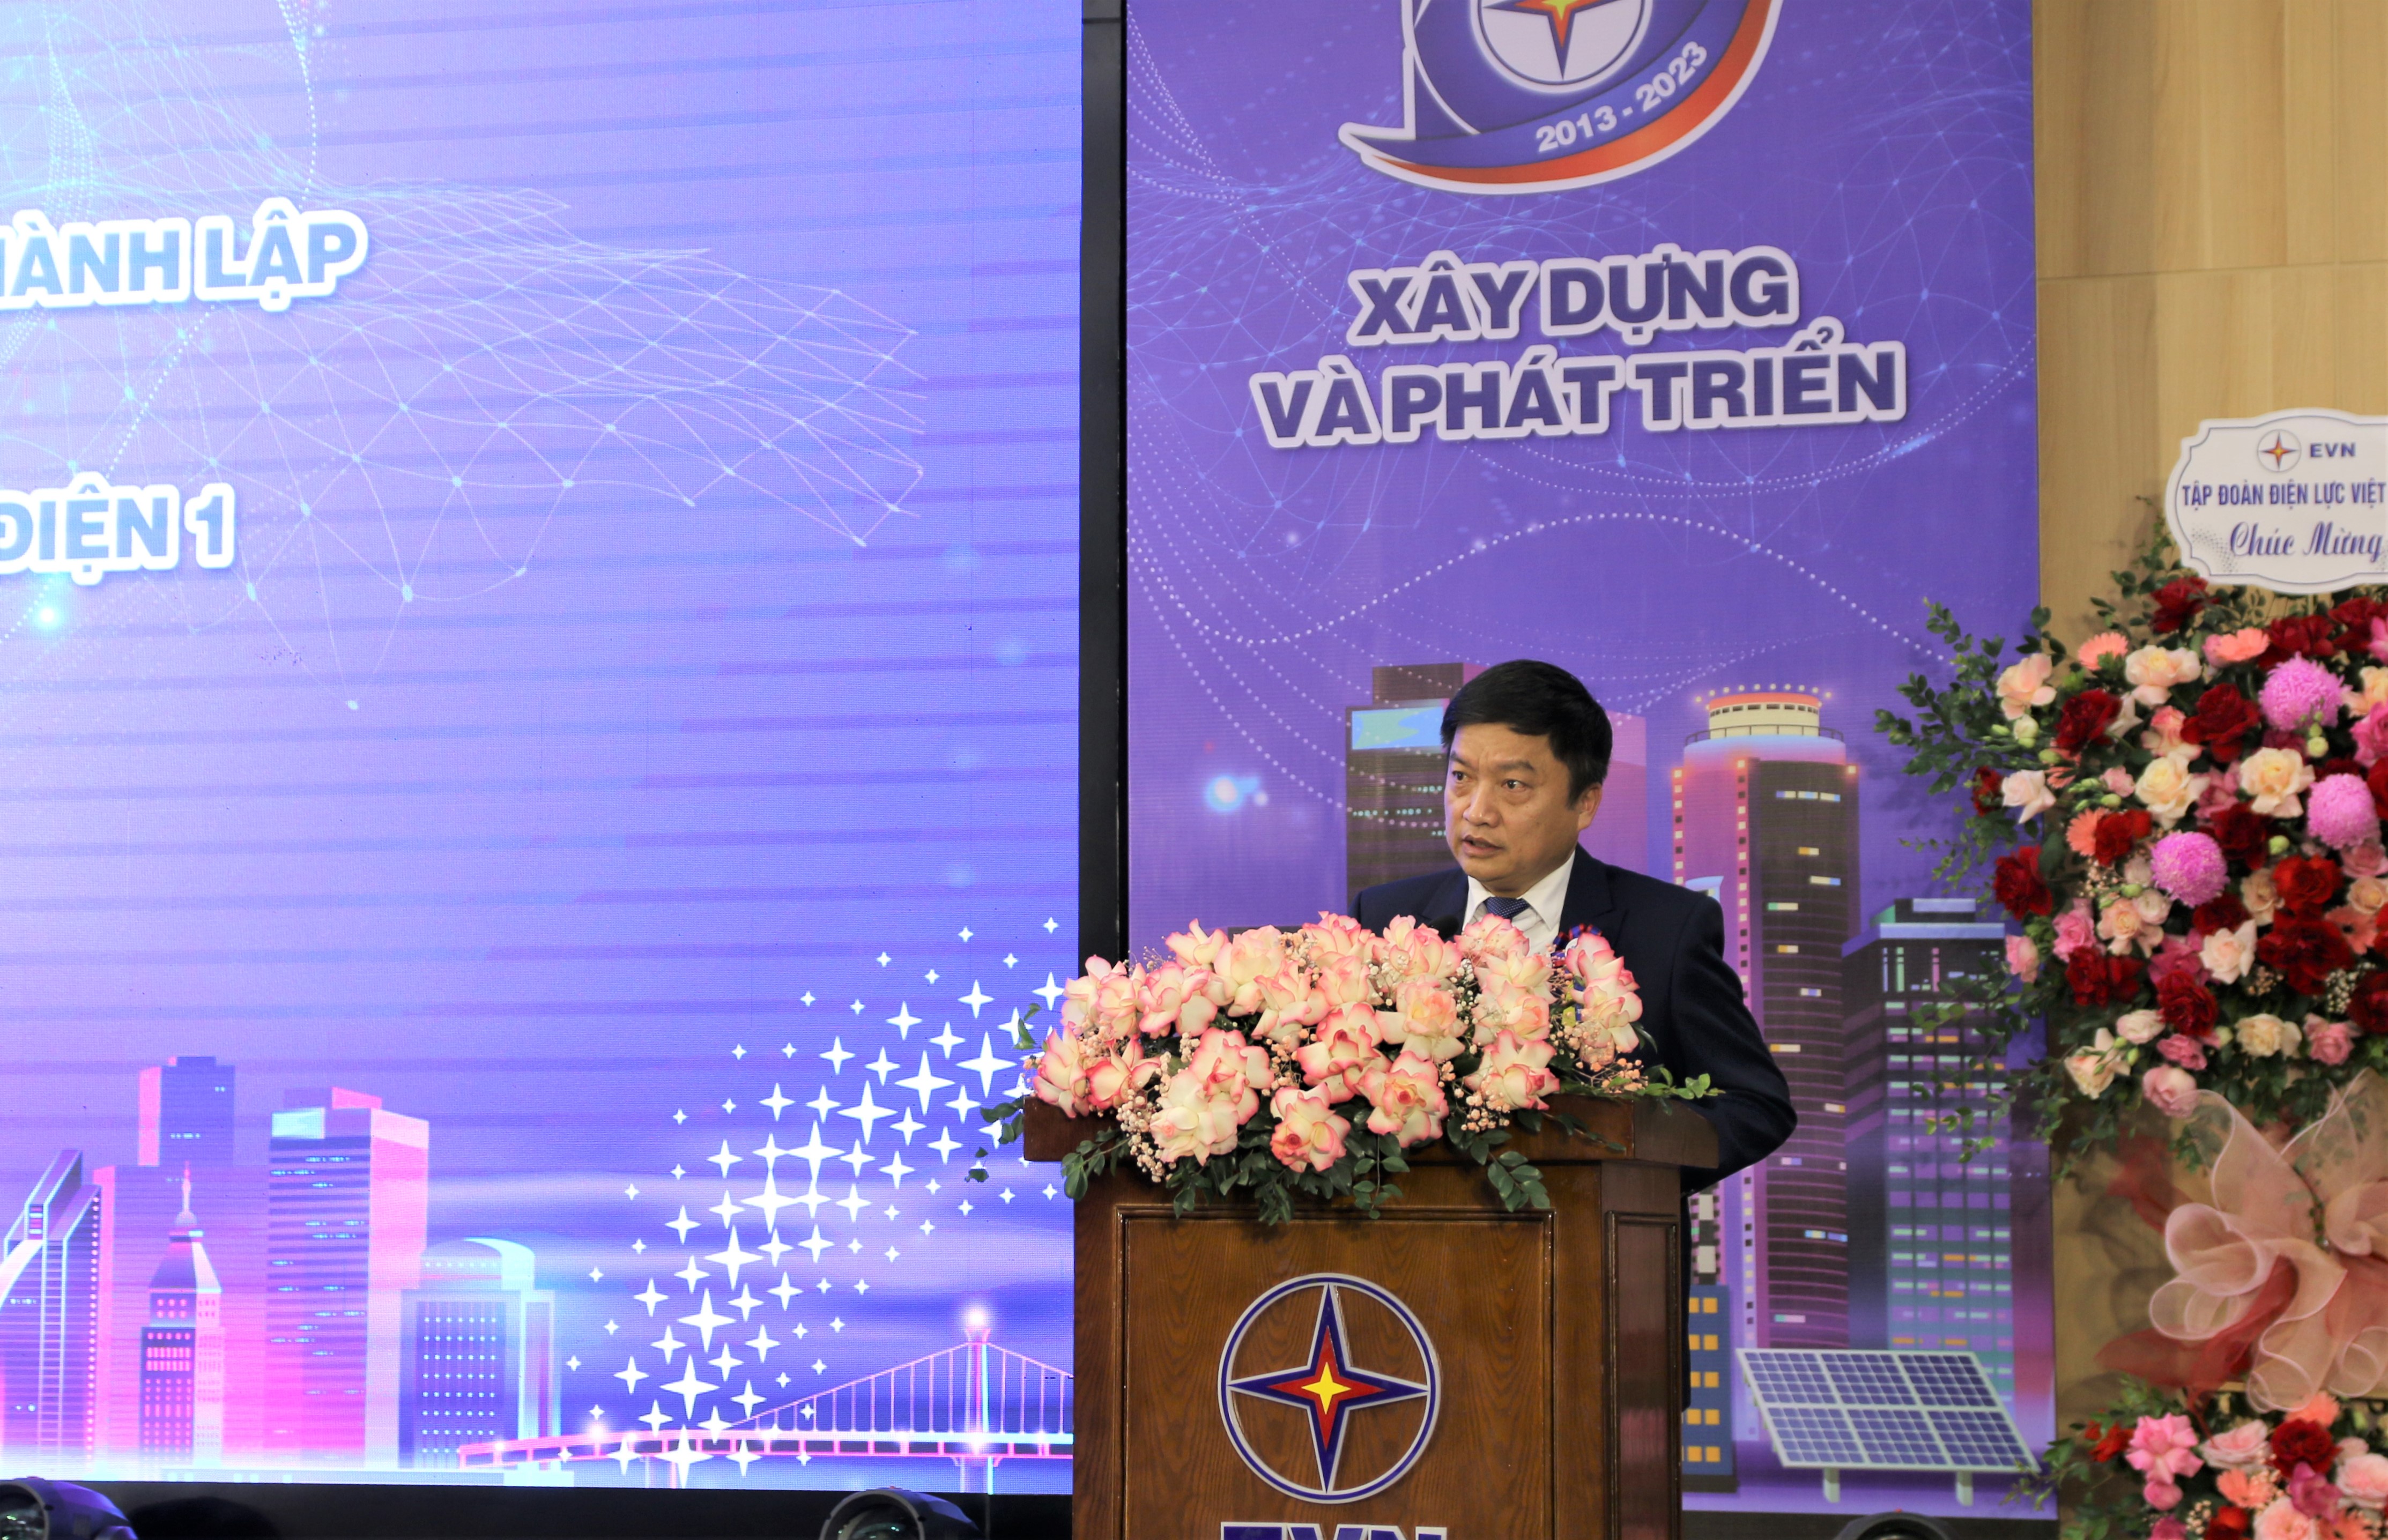 Ông Nguyễn Tiến Khoa - Chủ tịch Hội đồng thành viên EVNGENCO1 chia sẻ về chặng đường 10 năm xây dựng và phát triển của Tổng công ty